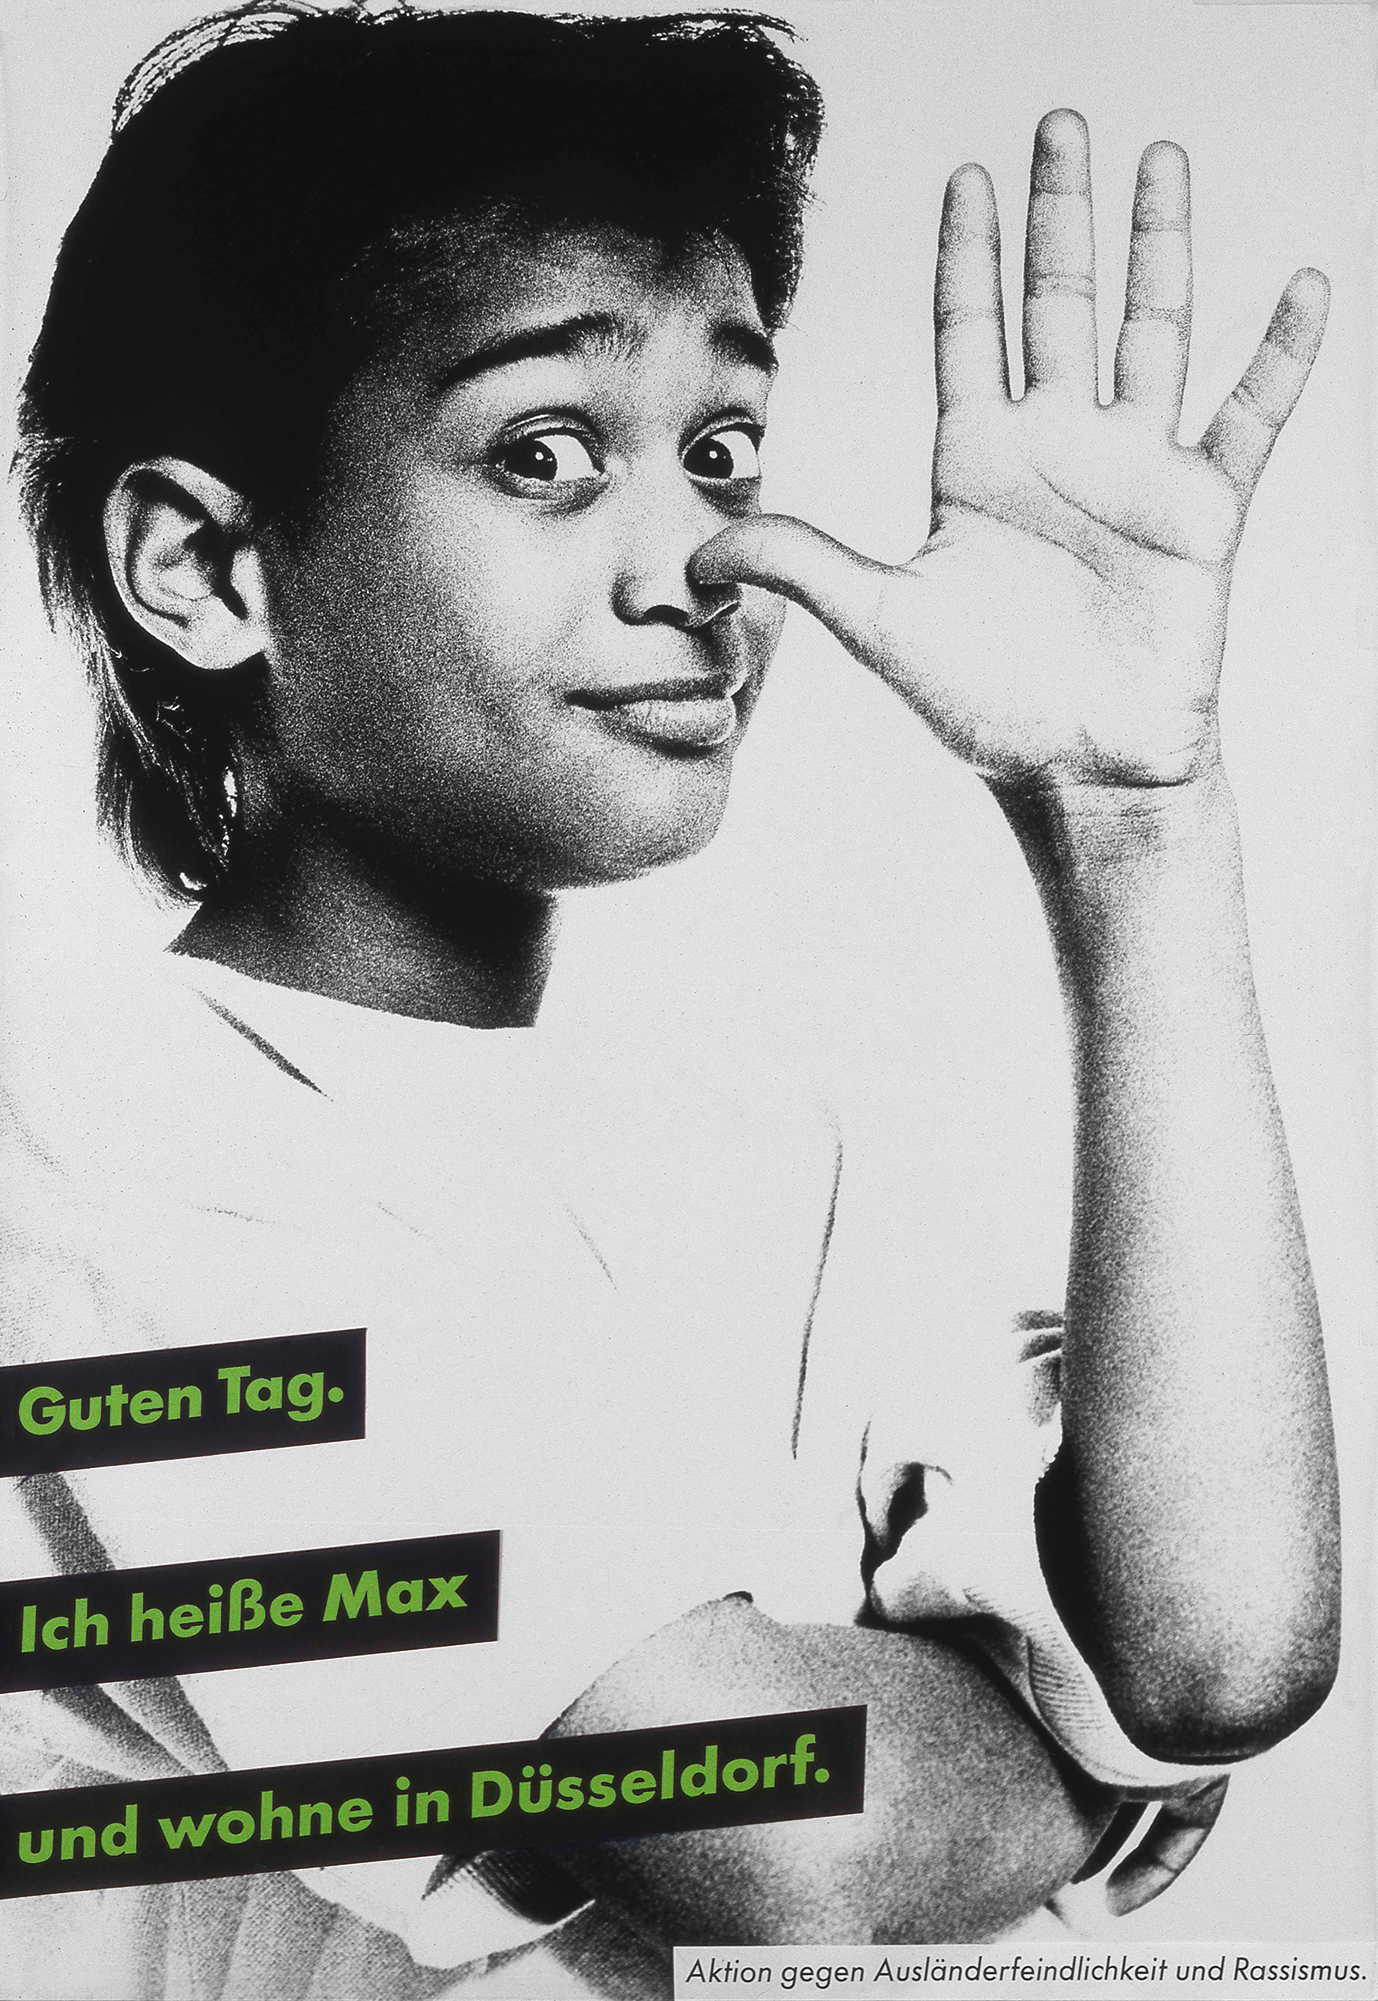 Gestaltet: Eva Cervinka, Udo Bechmann, Betreut: Uwe Loesch, Titel: Guten Tag. Ich heiße Max und wohne in Düsseldorf., Jahr: 1989